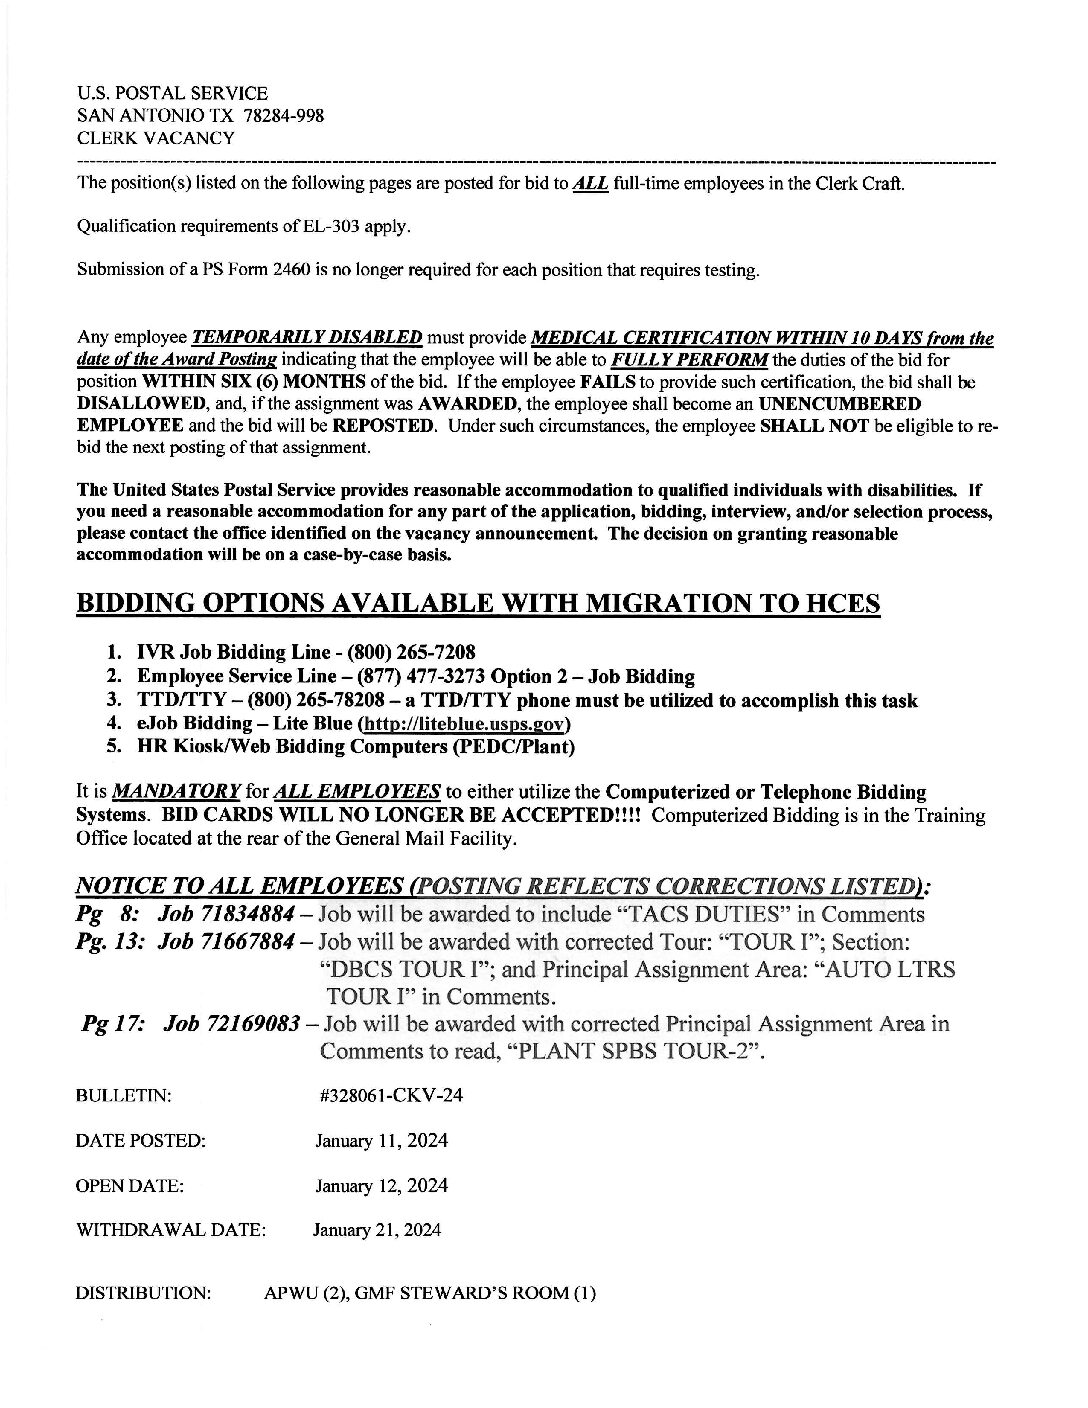 E-Flash Clerk Job Vacancy Bulletin 1/11/2024 - 